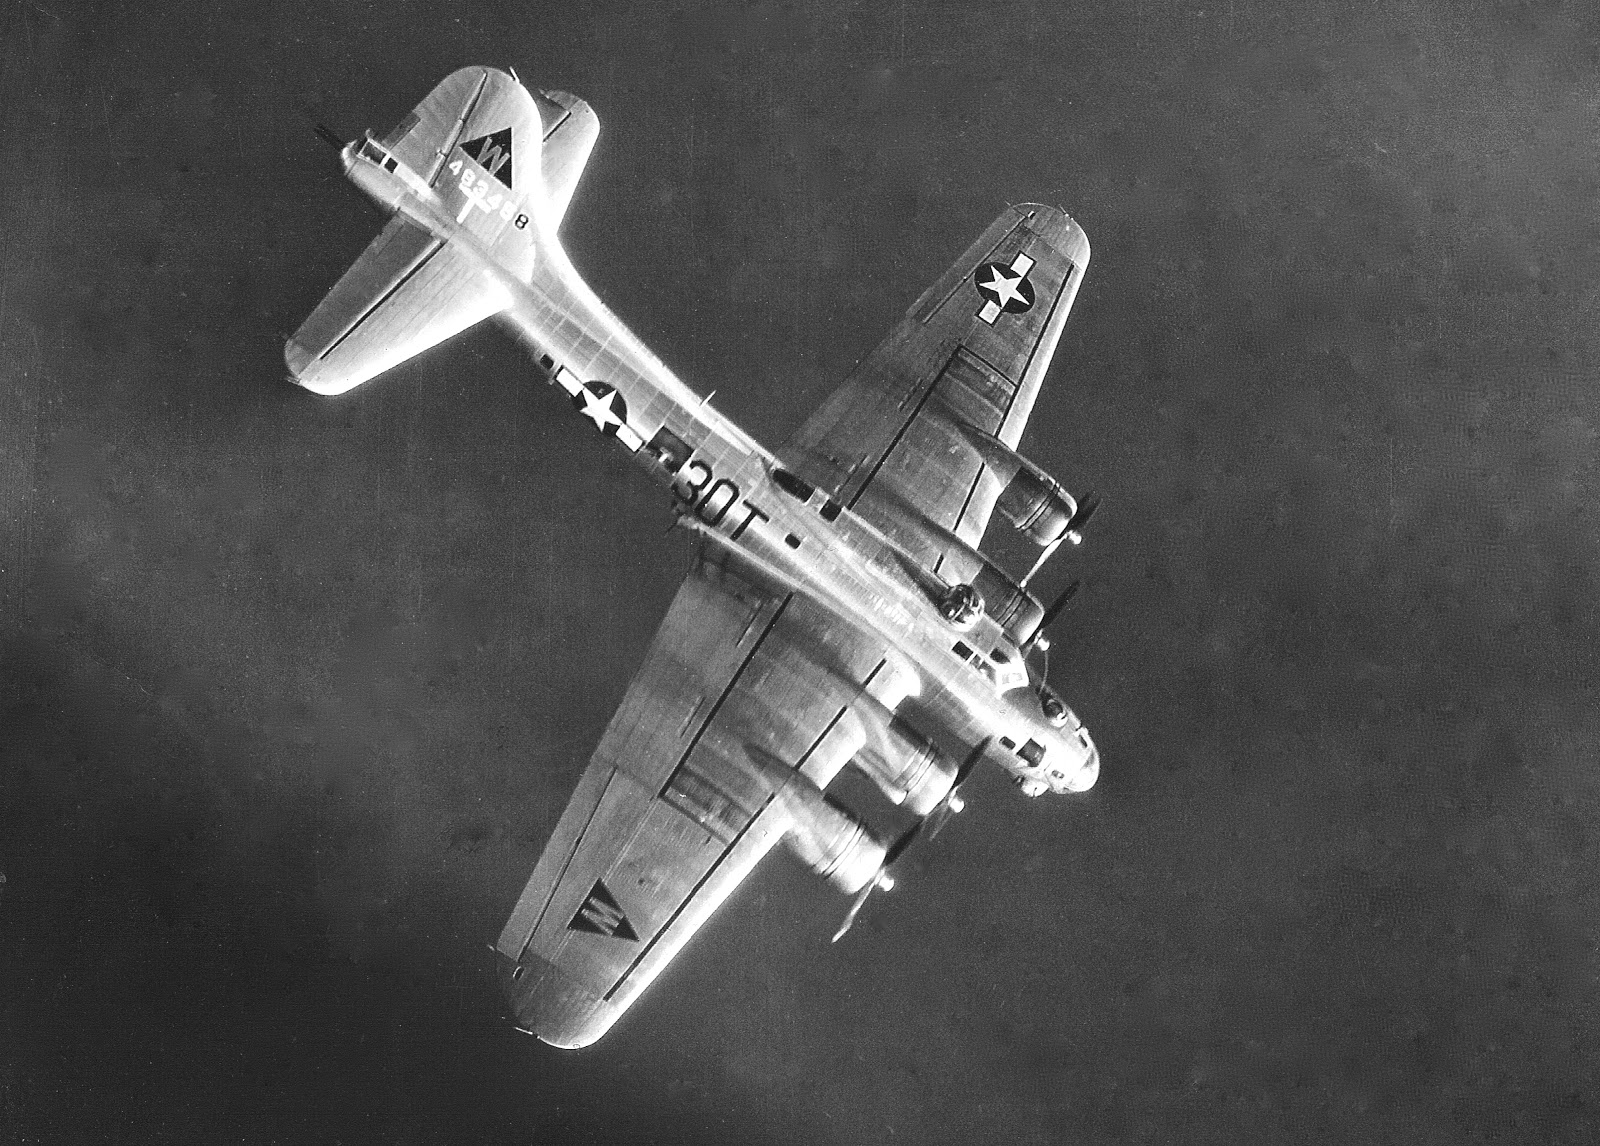 B-17 #44-83458